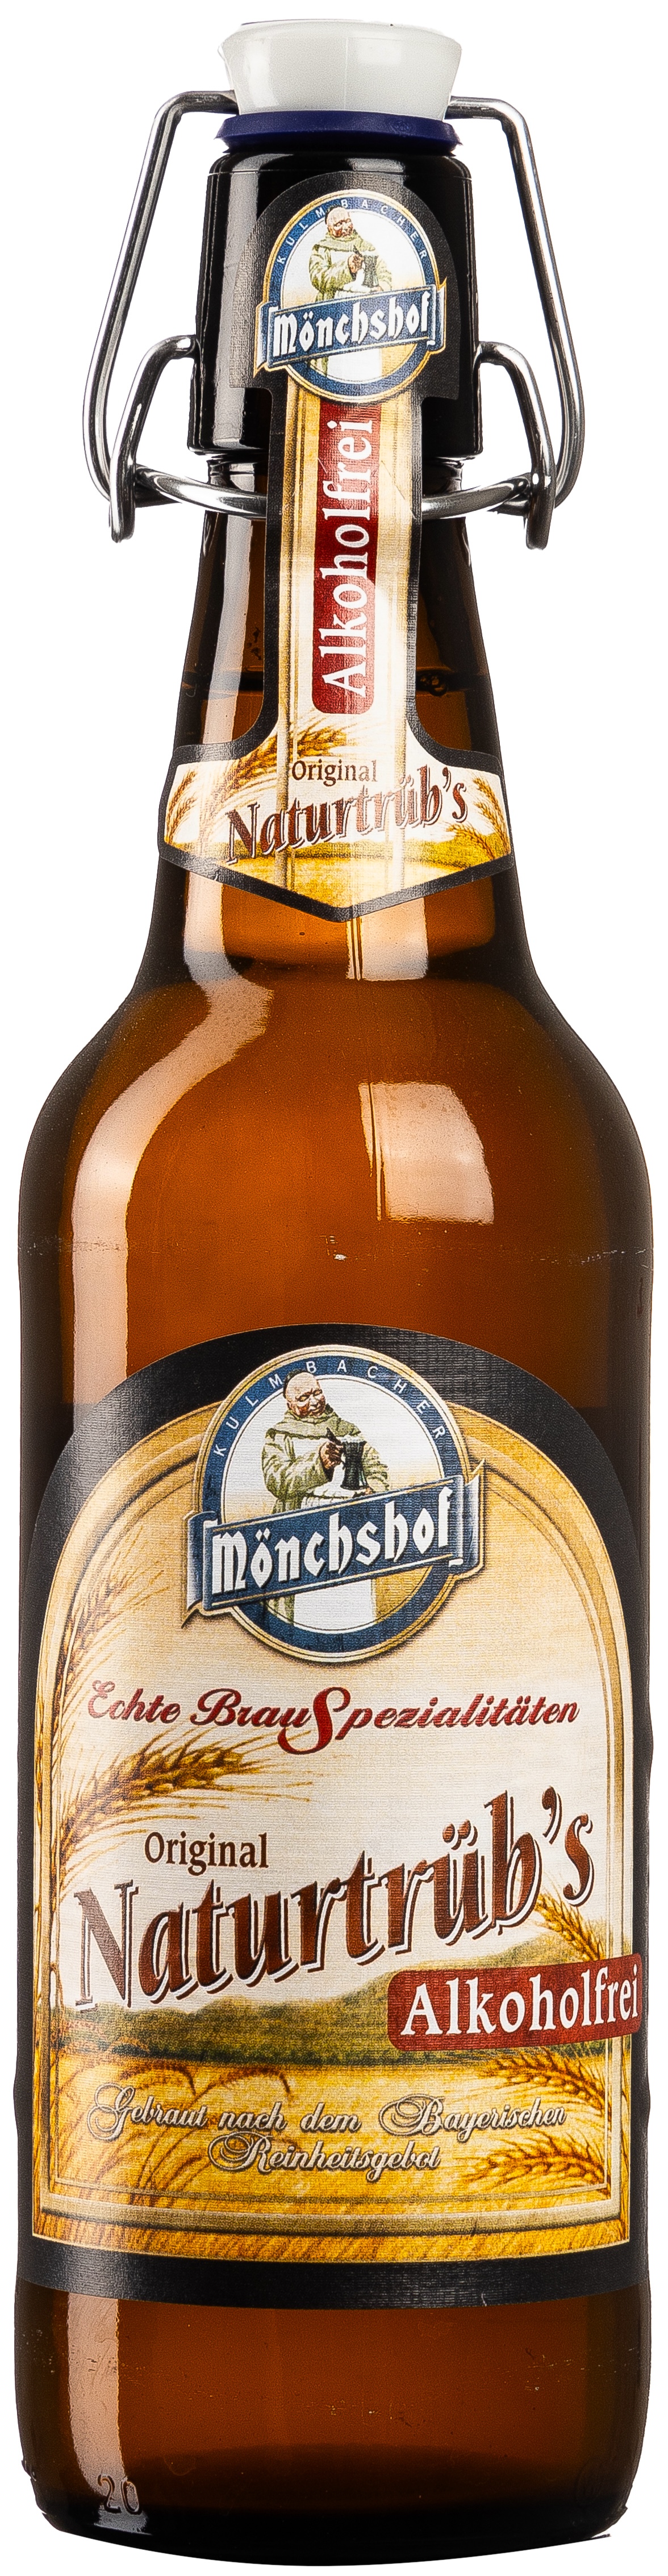 Mönchshof Naturtrüb Alkoholfrei 0,5L MEHRWEG